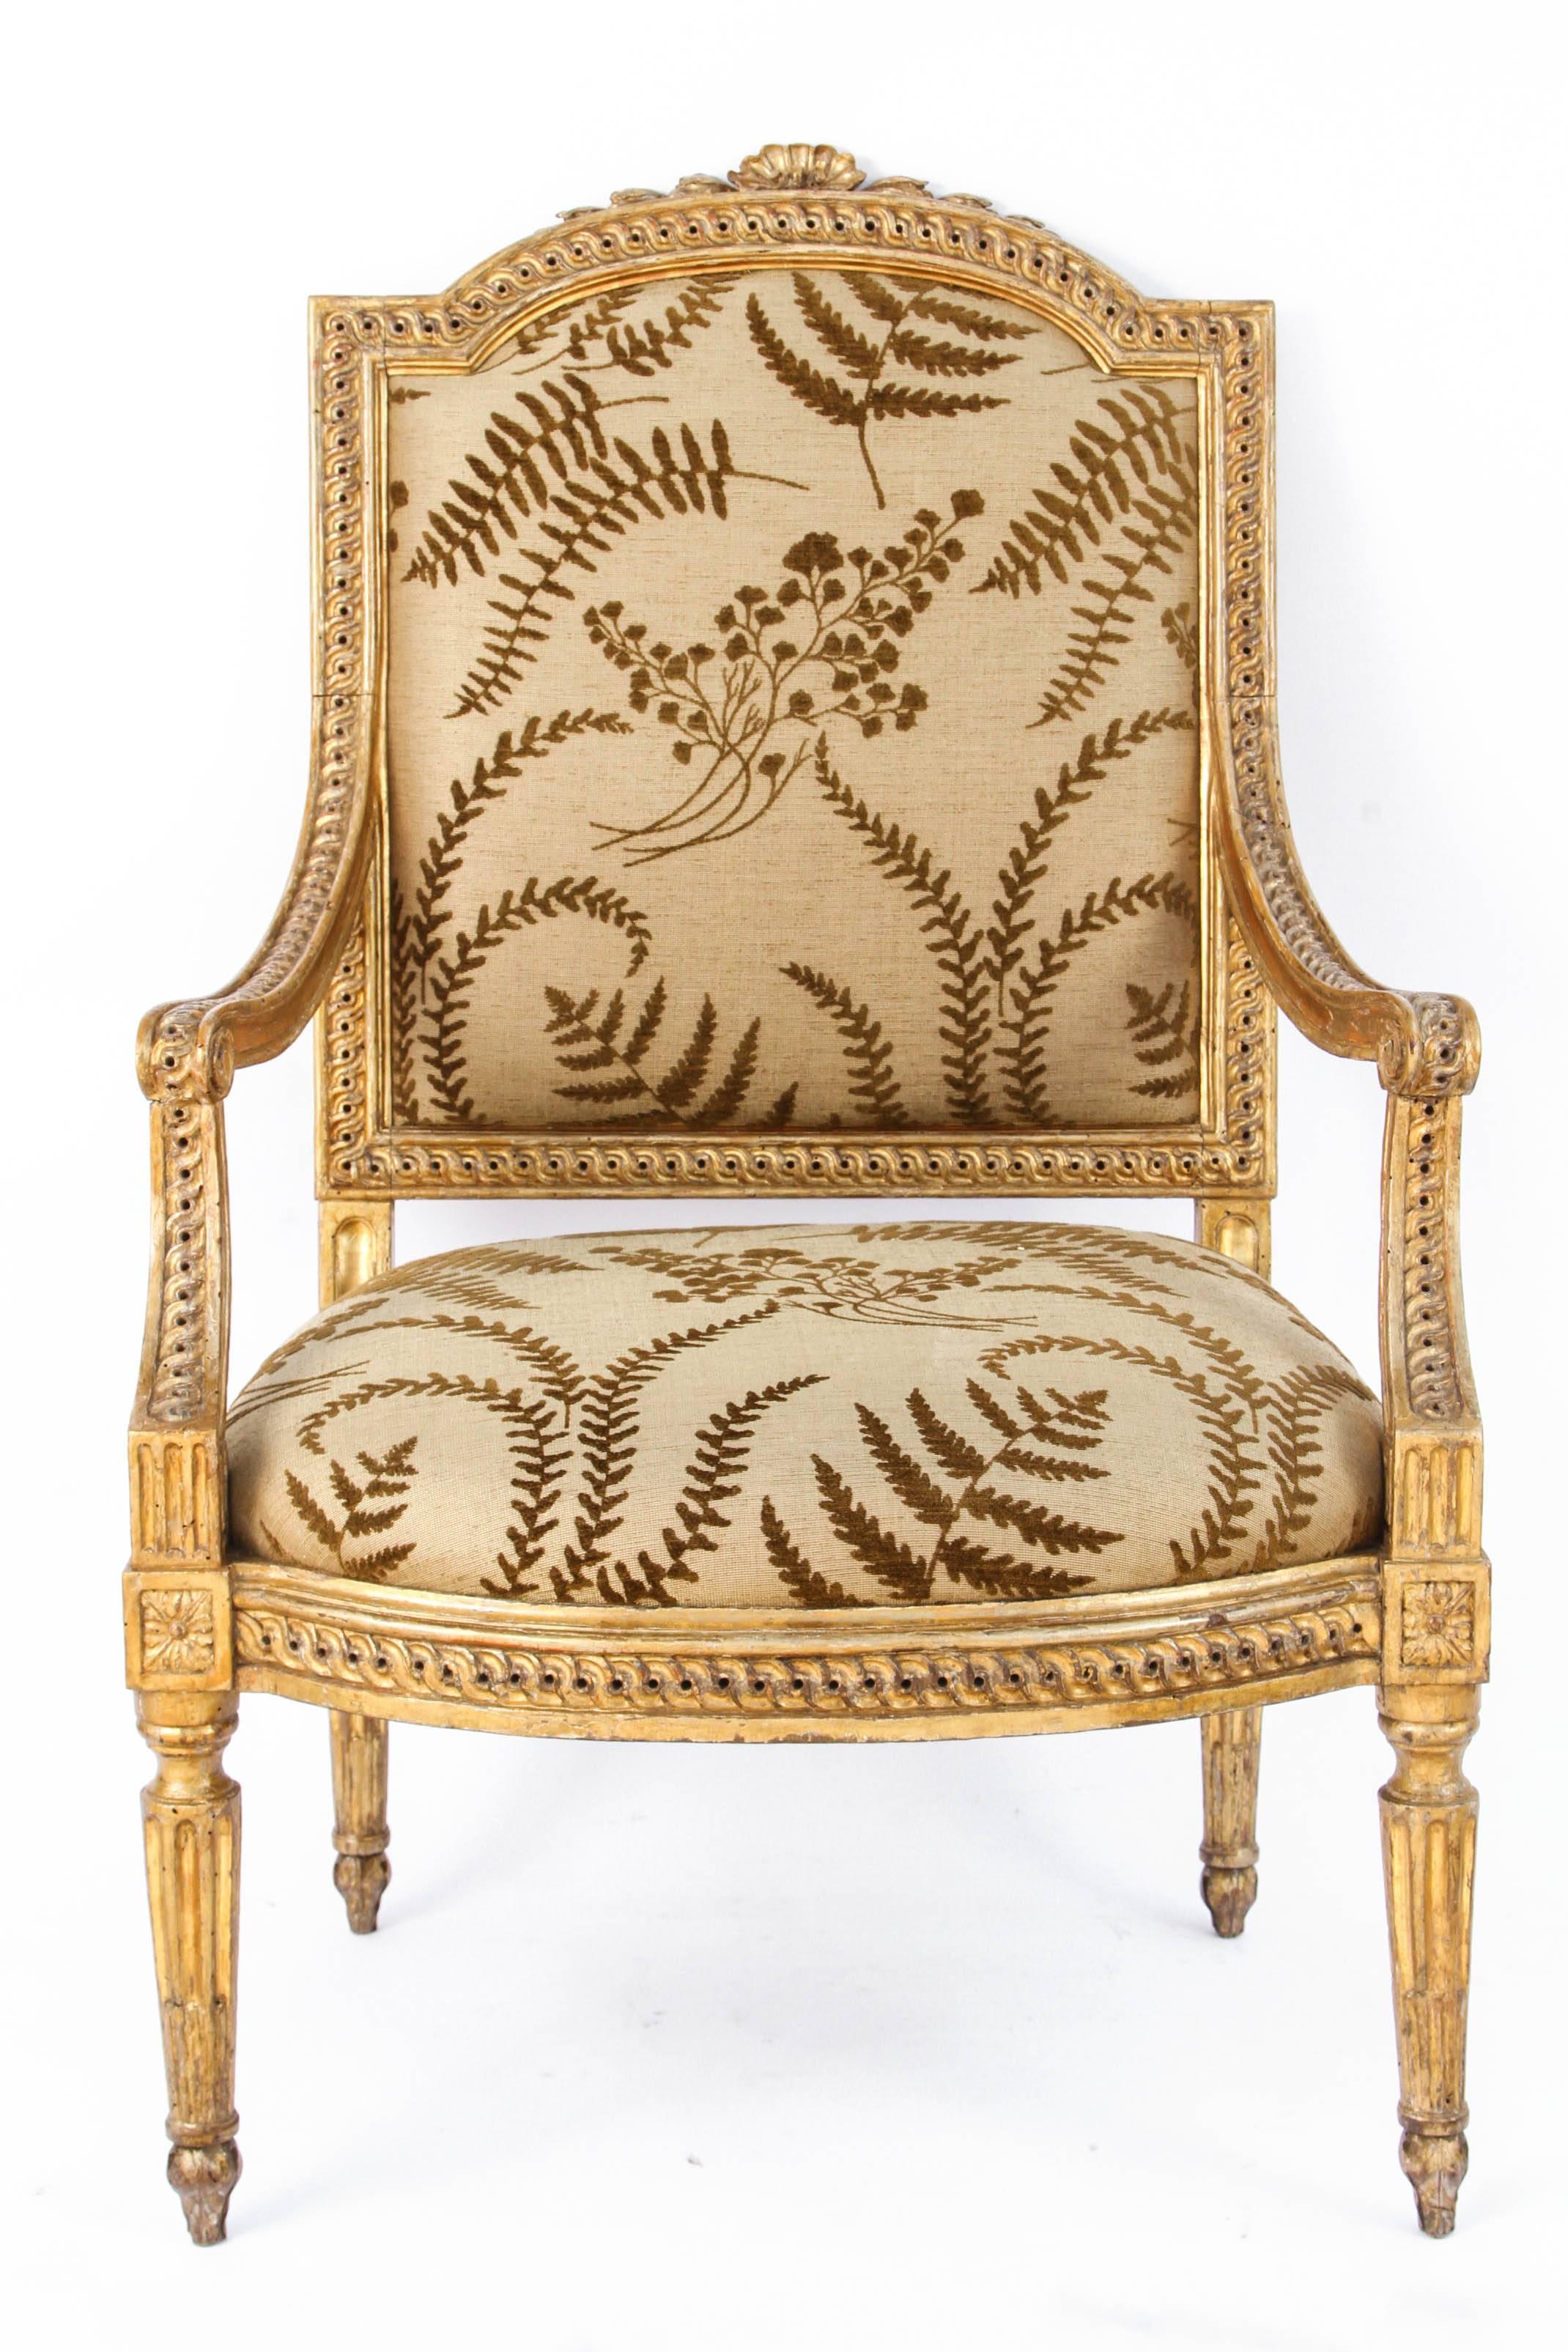 Zwei sehr schöne italienische Sessel aus geschnitztem Goldholz des 18. Jahrhunderts mit Muschelmotiv. Die Stühle sind mit einem gewebten Leinenstoff mit botanischen Motiven gepolstert. Der angegebene Preis ist für ein Paar, aber es gibt ein weiteres